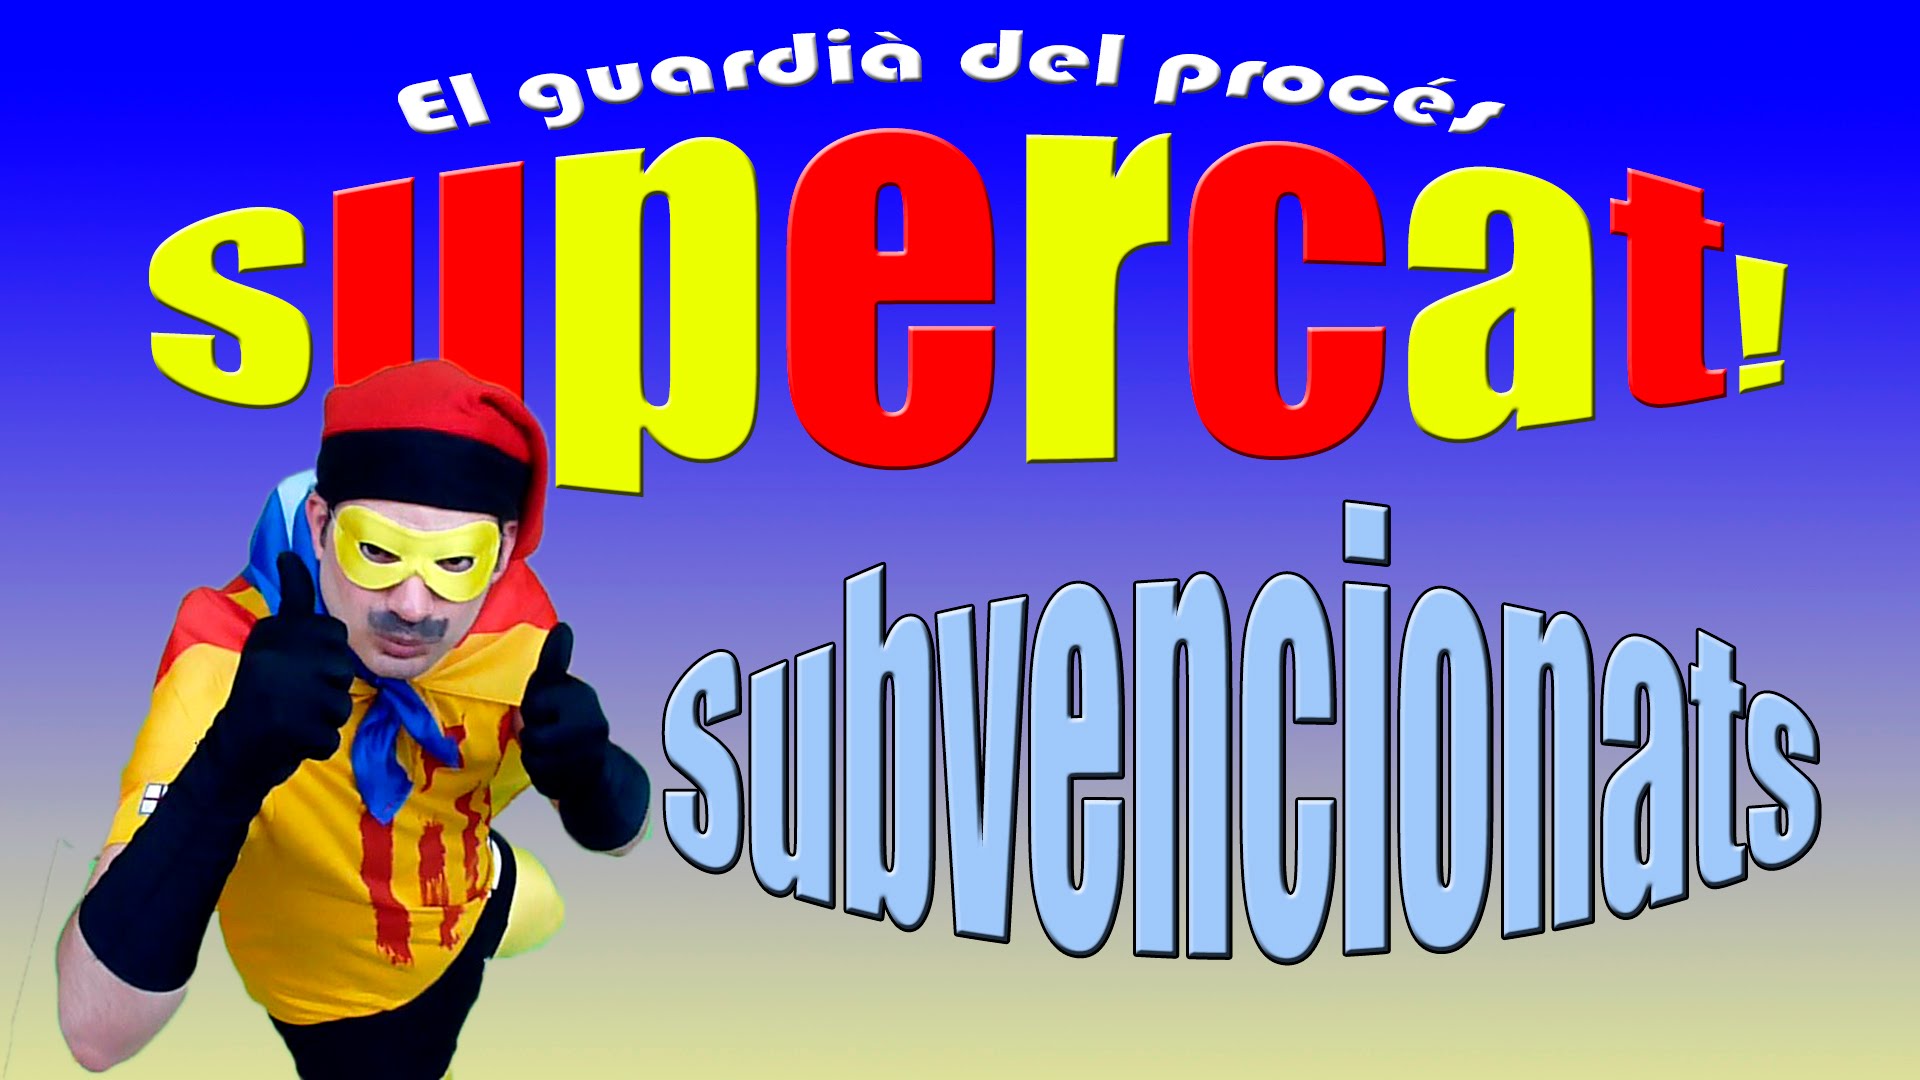 SuperCat - El Guardià del Procés Capítol 4 - Subvencionats de Marc Lesan